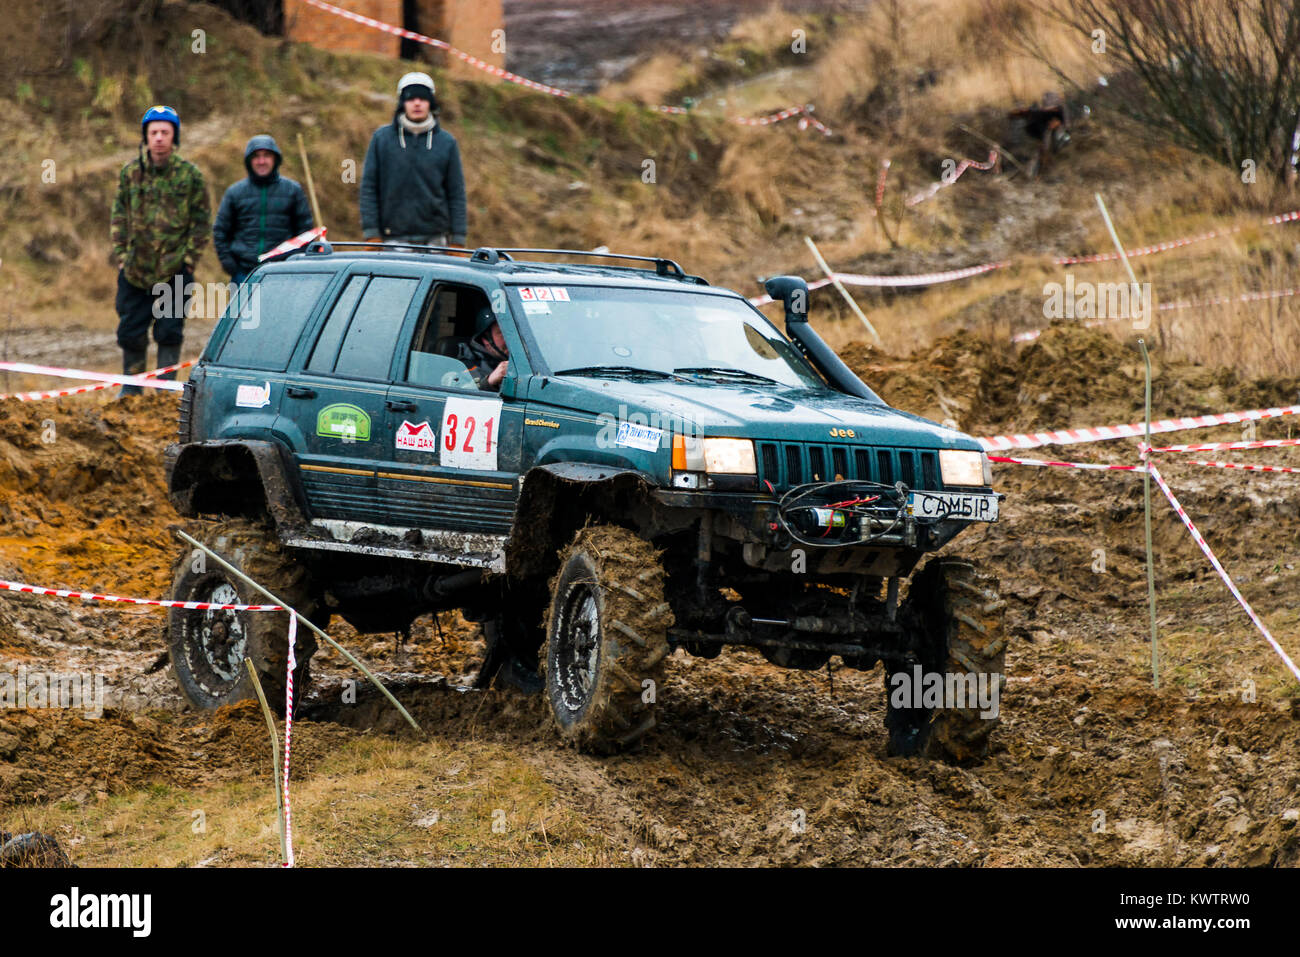 Lemberg, Ukraine - 21. Februar 2016: Geländewagen der Marke Jeep Cherokee überwindet die Spur auf einer laienhaften Konkurrenzen Versuch in der Nähe der Stadt Lemberg, Ukrain Stockfoto